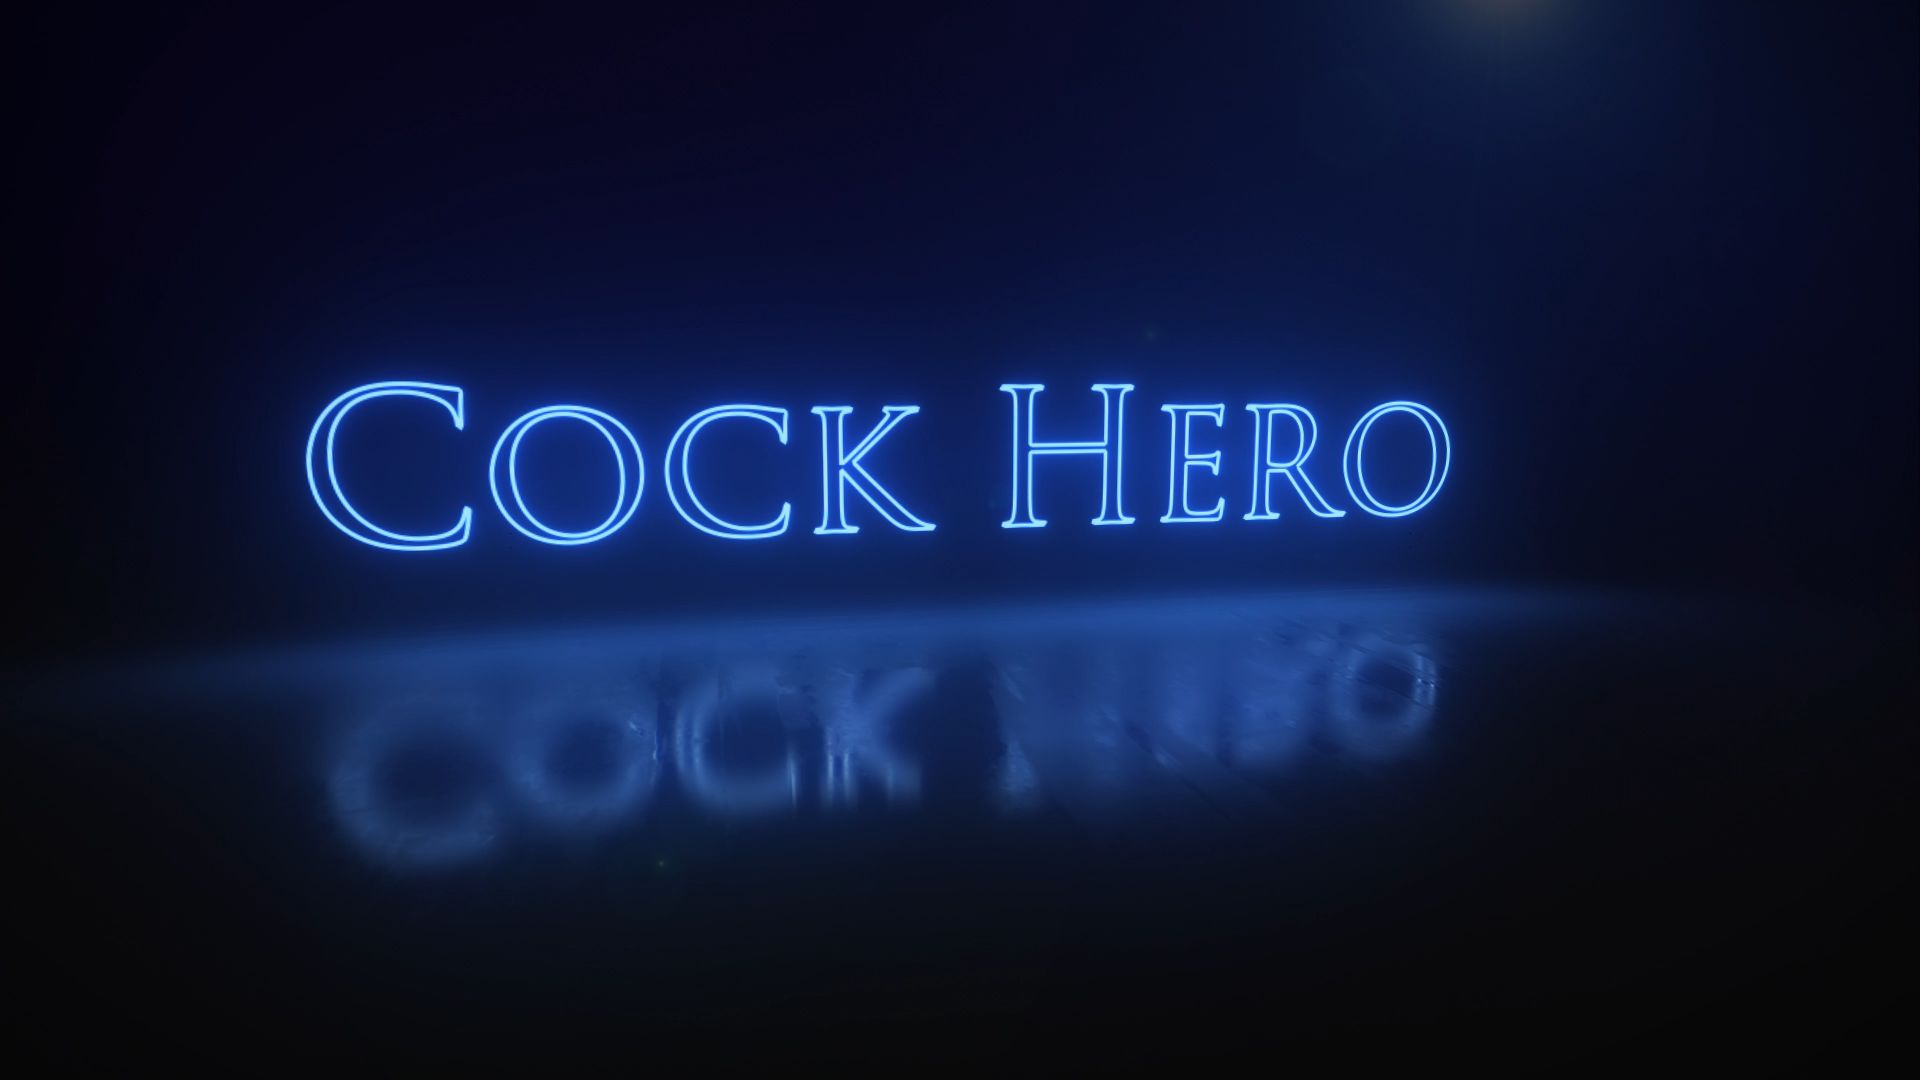 Cock hero games